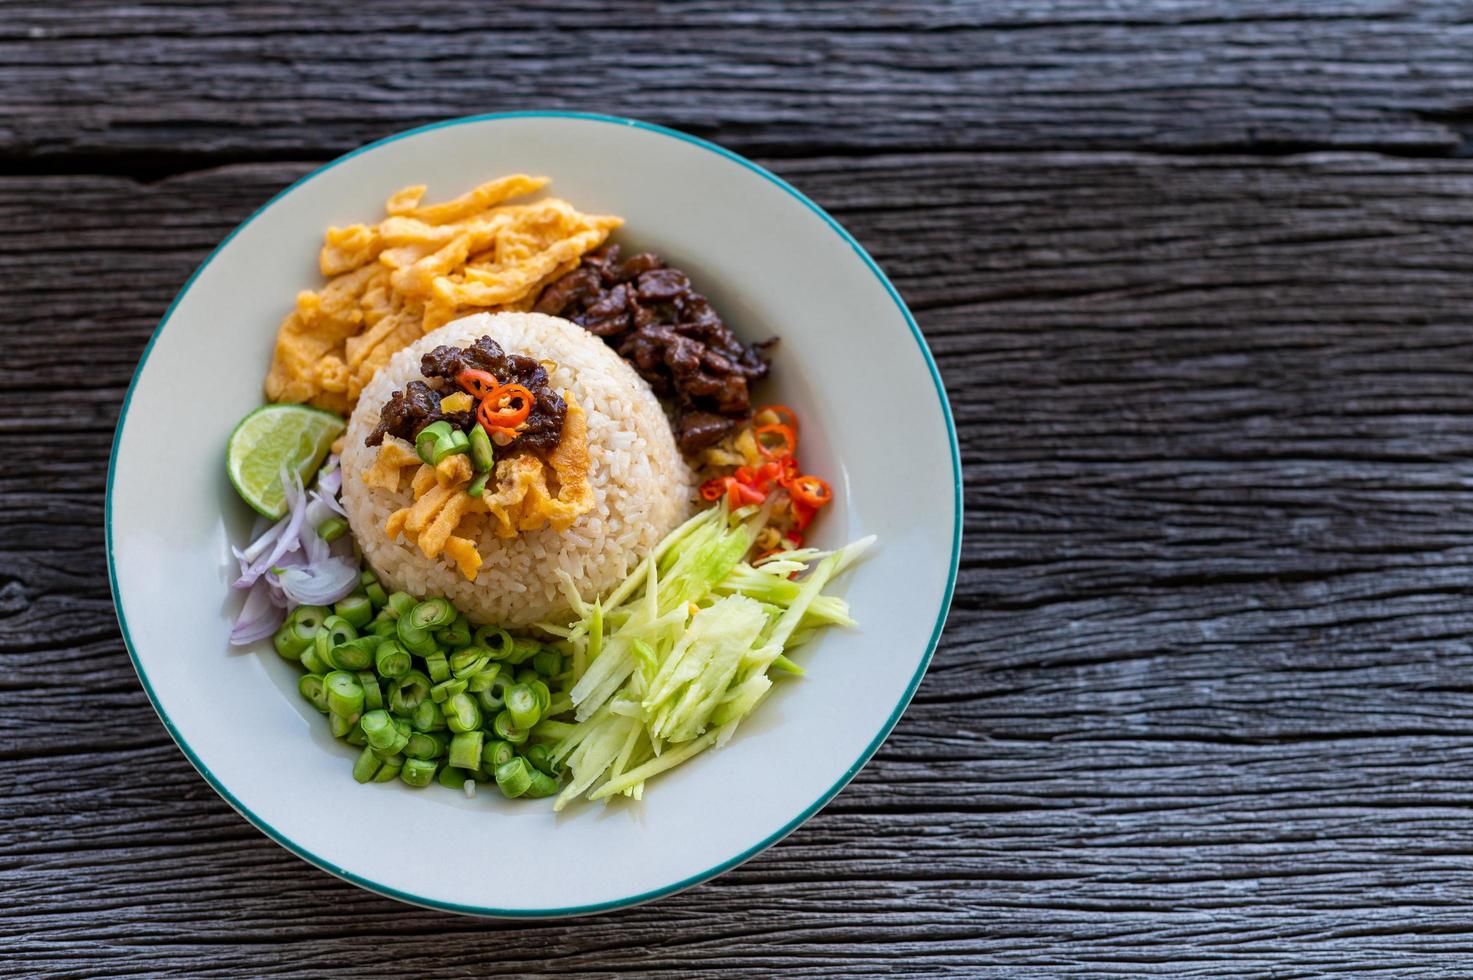 Gamberetti tailandesi pasta riso fritto con maiale dolce sul tavolo di legno, vista dall'alto foto